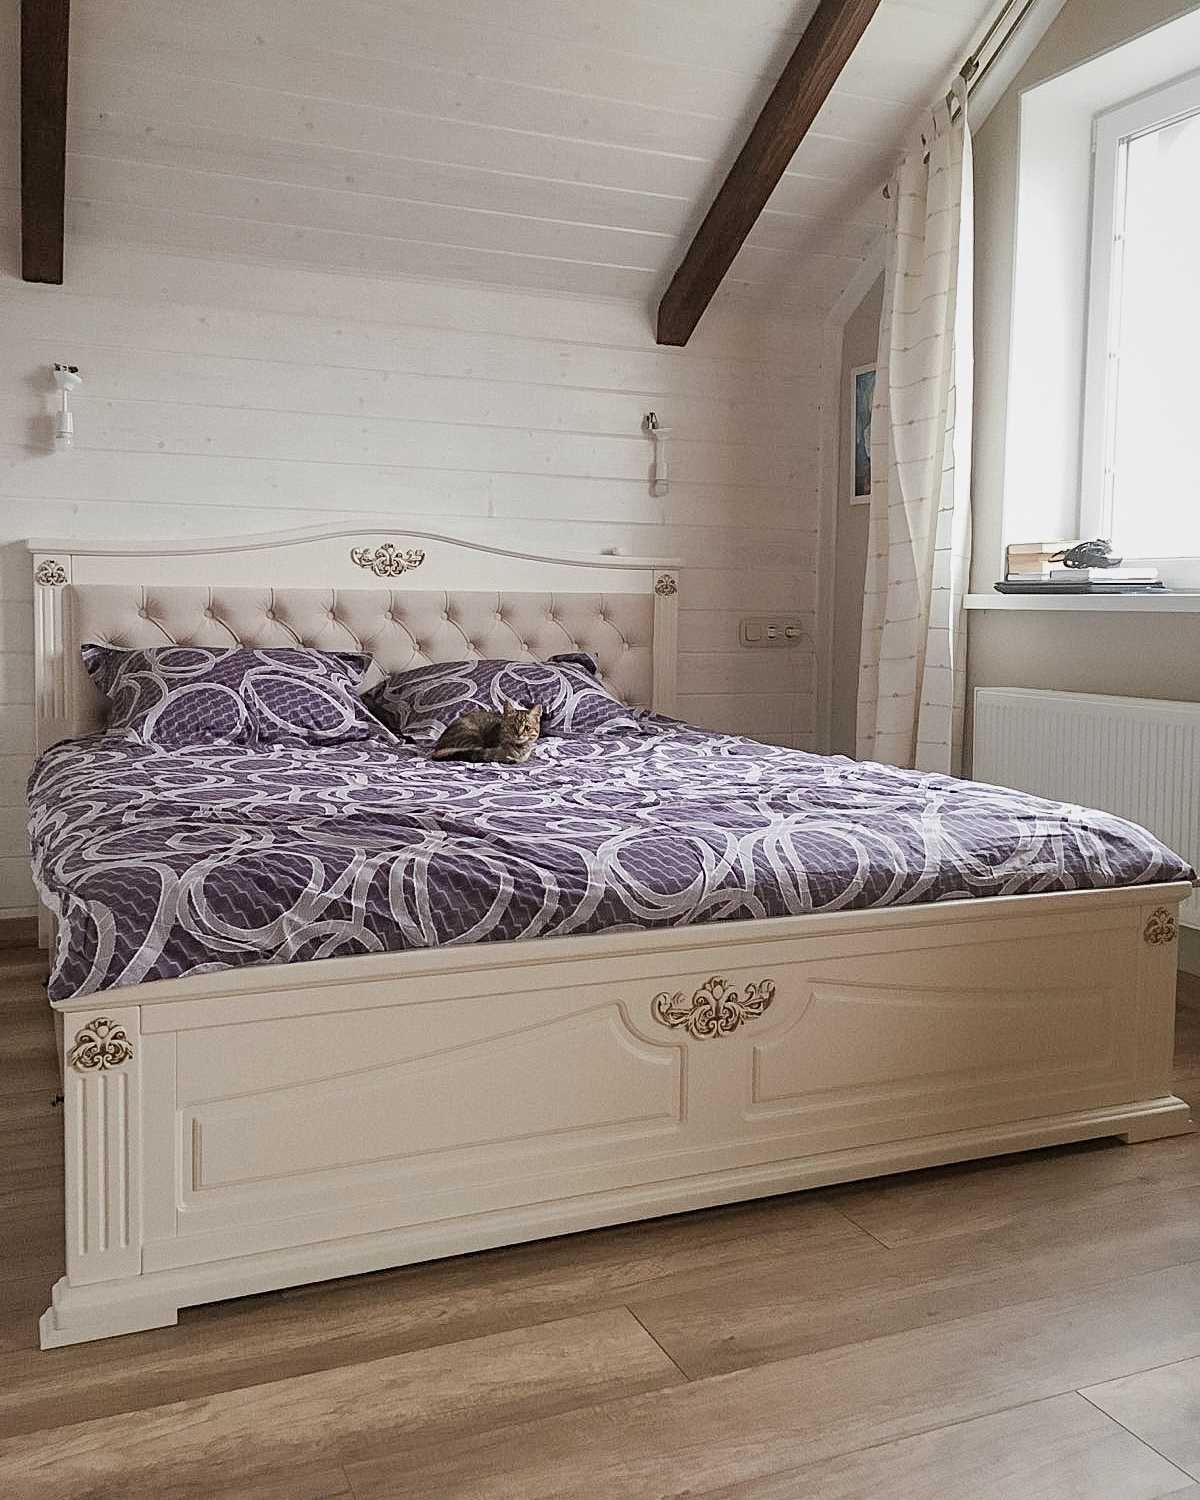 Шикарная двуспальная кровать с мягким изголовьем, деревянная